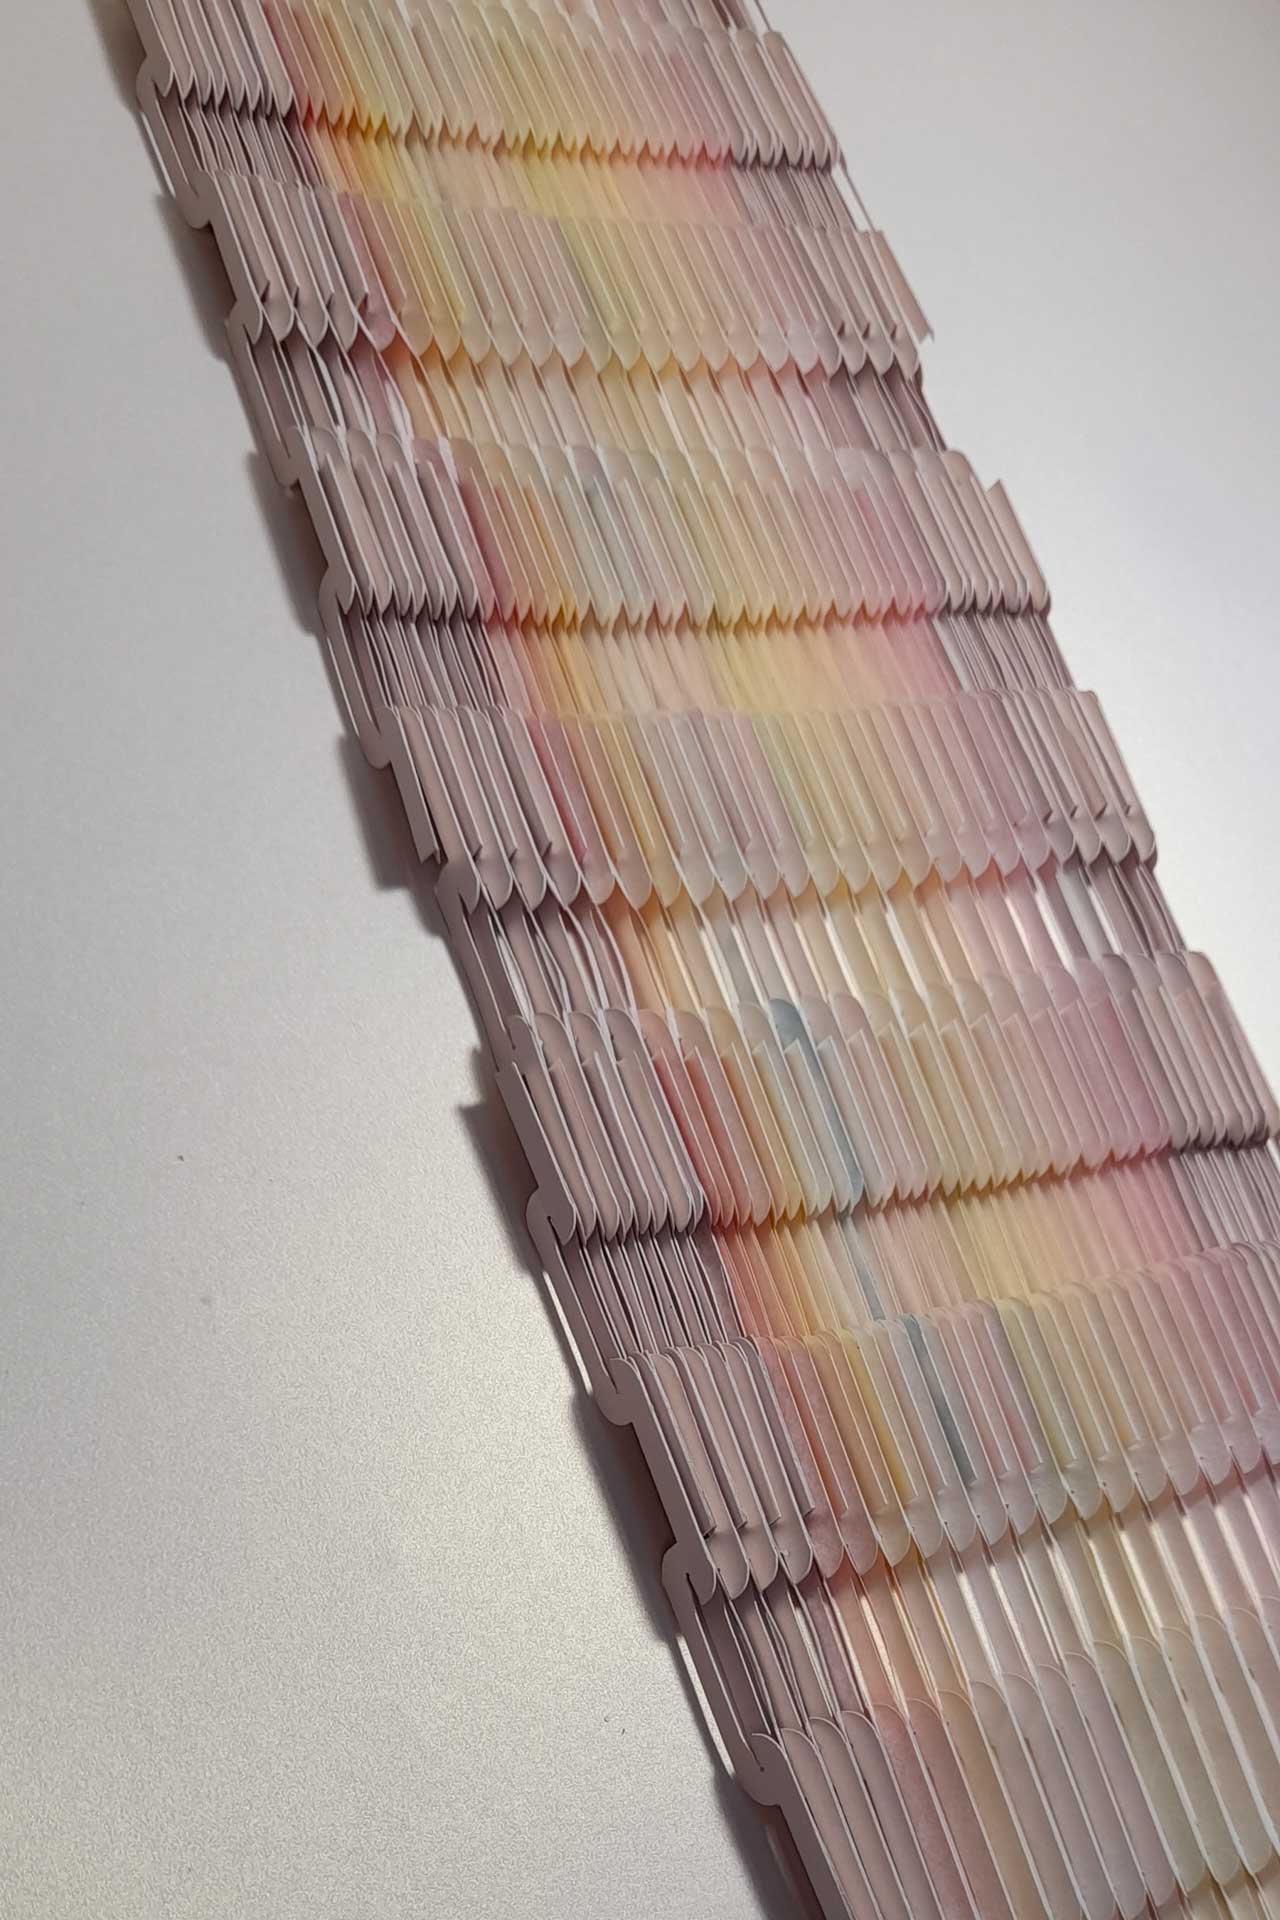 Couleurs de la peau - Papier Pergamenata - Impression laser, Découpe au cutter numérique, assemblage par crochets "Paperoko" - Env. H.54,3 x L.18,5 x P.0,5 cm - 2022
